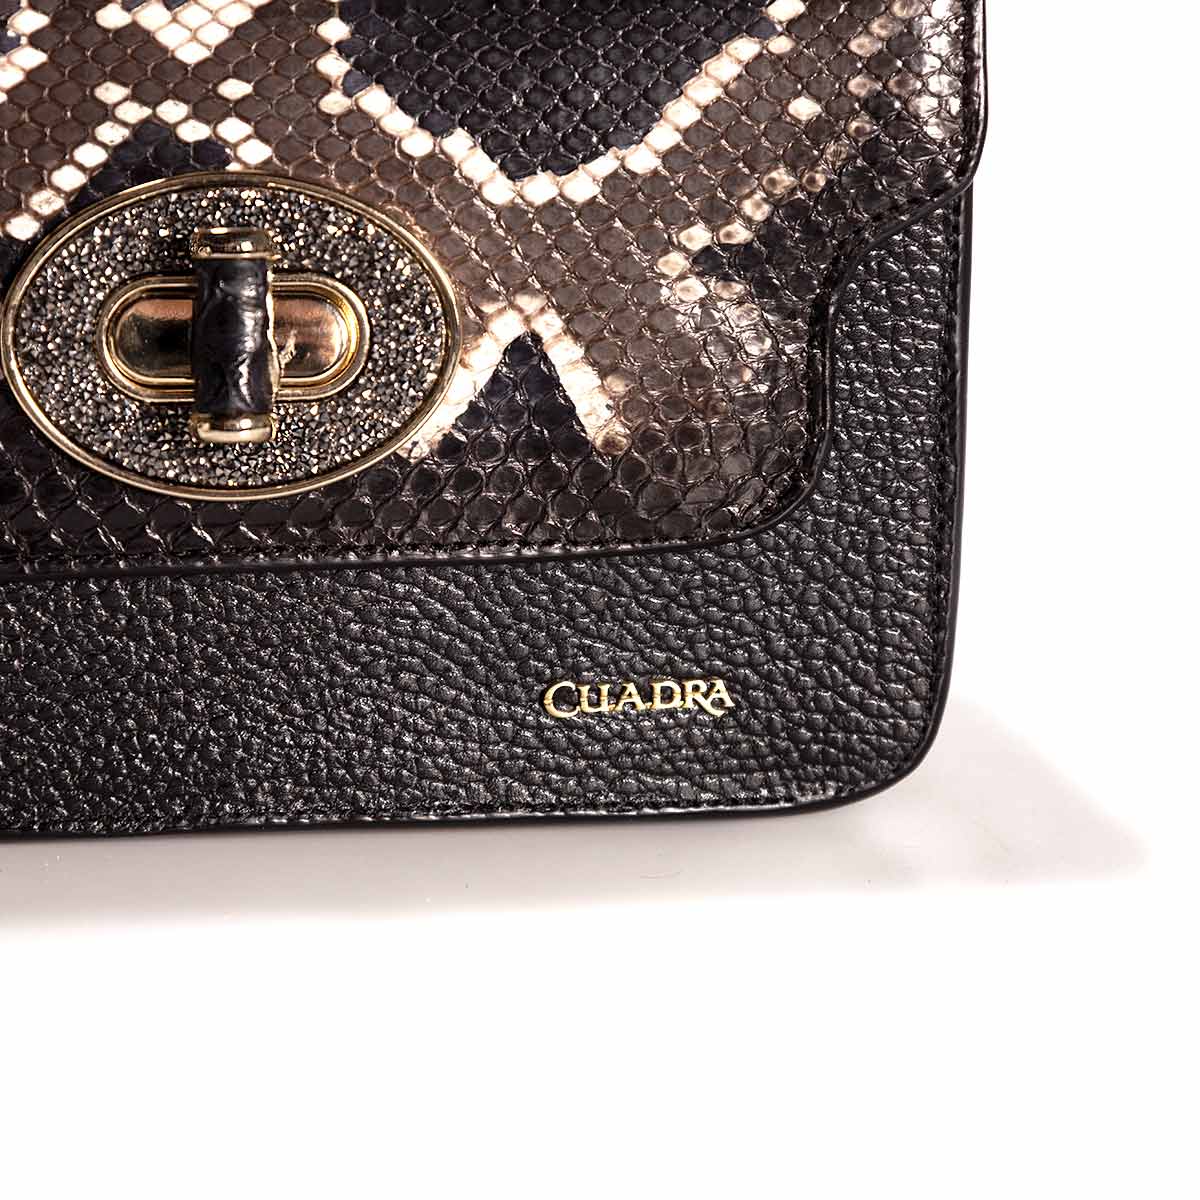 BOD59PI - Cuadra black western casual leather python shoulder bag for women.-Kuet.us